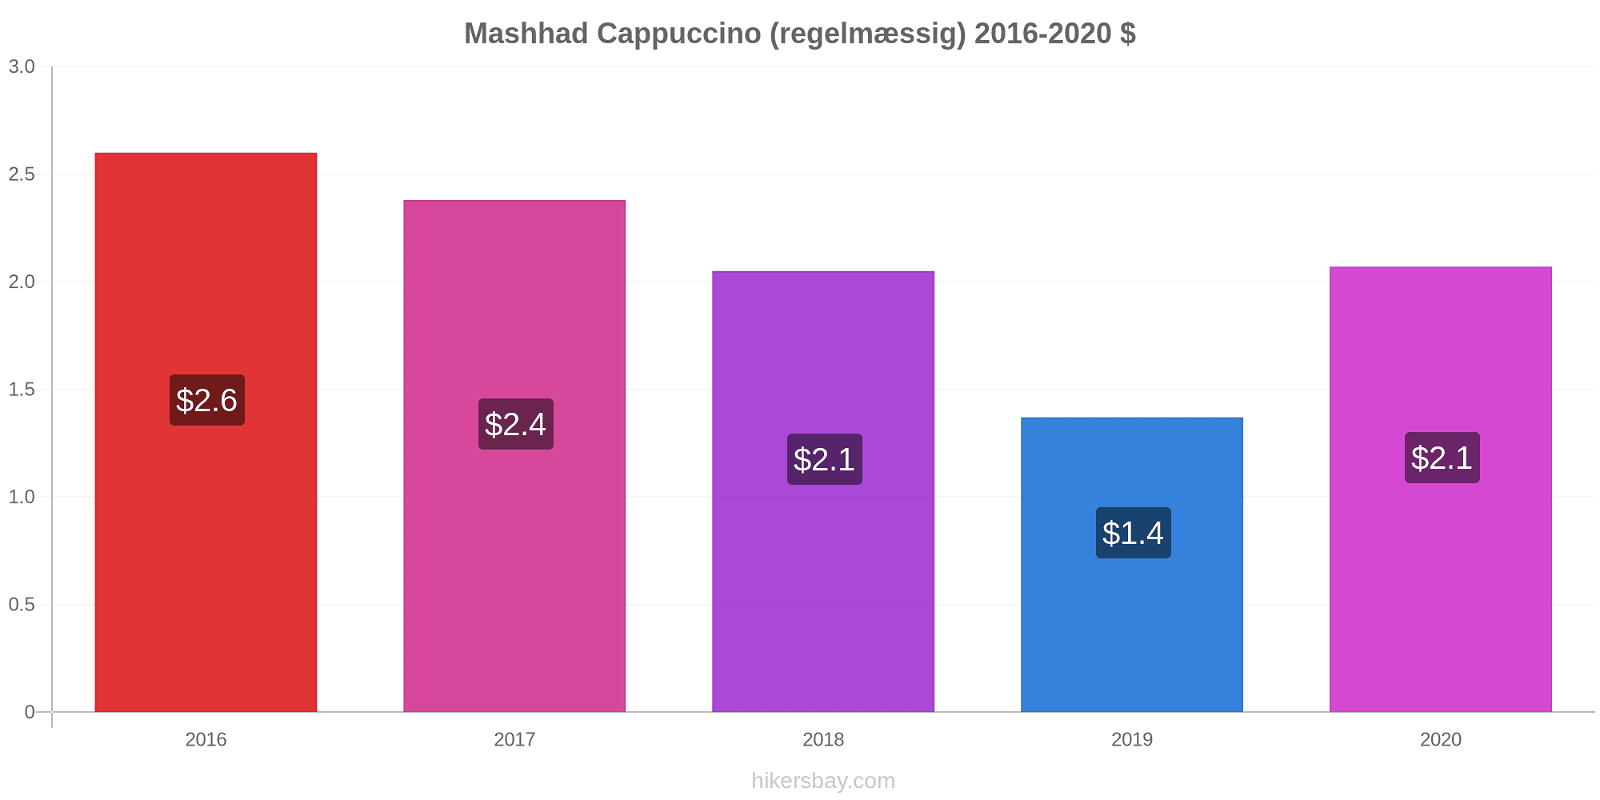 Mashhad prisændringer Cappuccino (regelmæssig) hikersbay.com